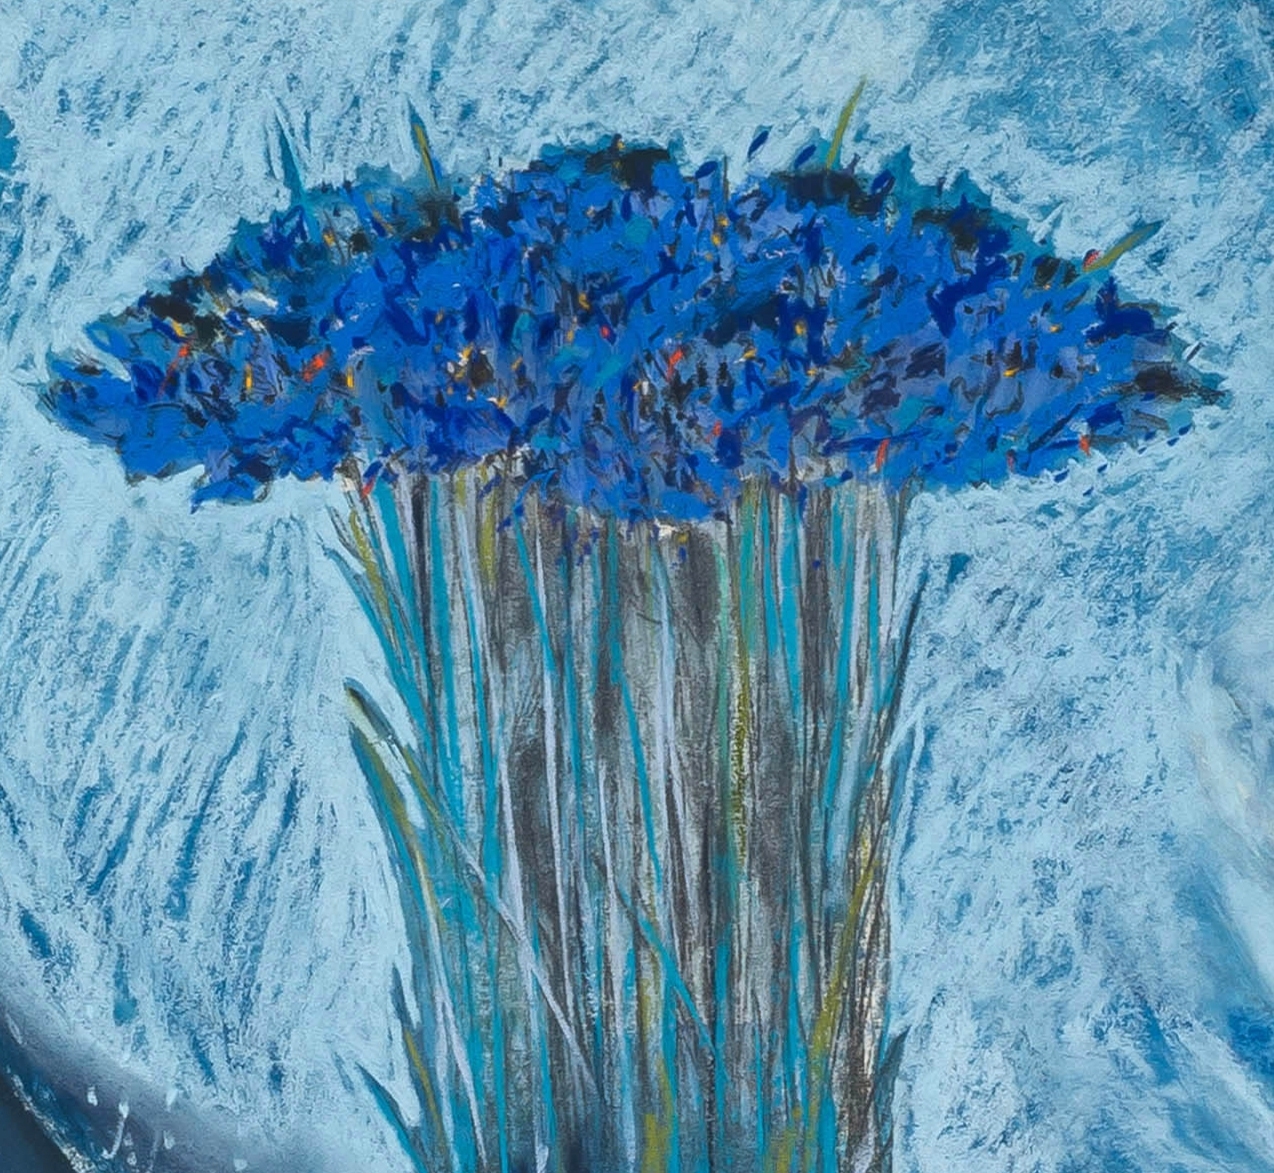 Artwork by Louis Jansen van Vuuren, Flowers in a Vase, Made of pastel on paper